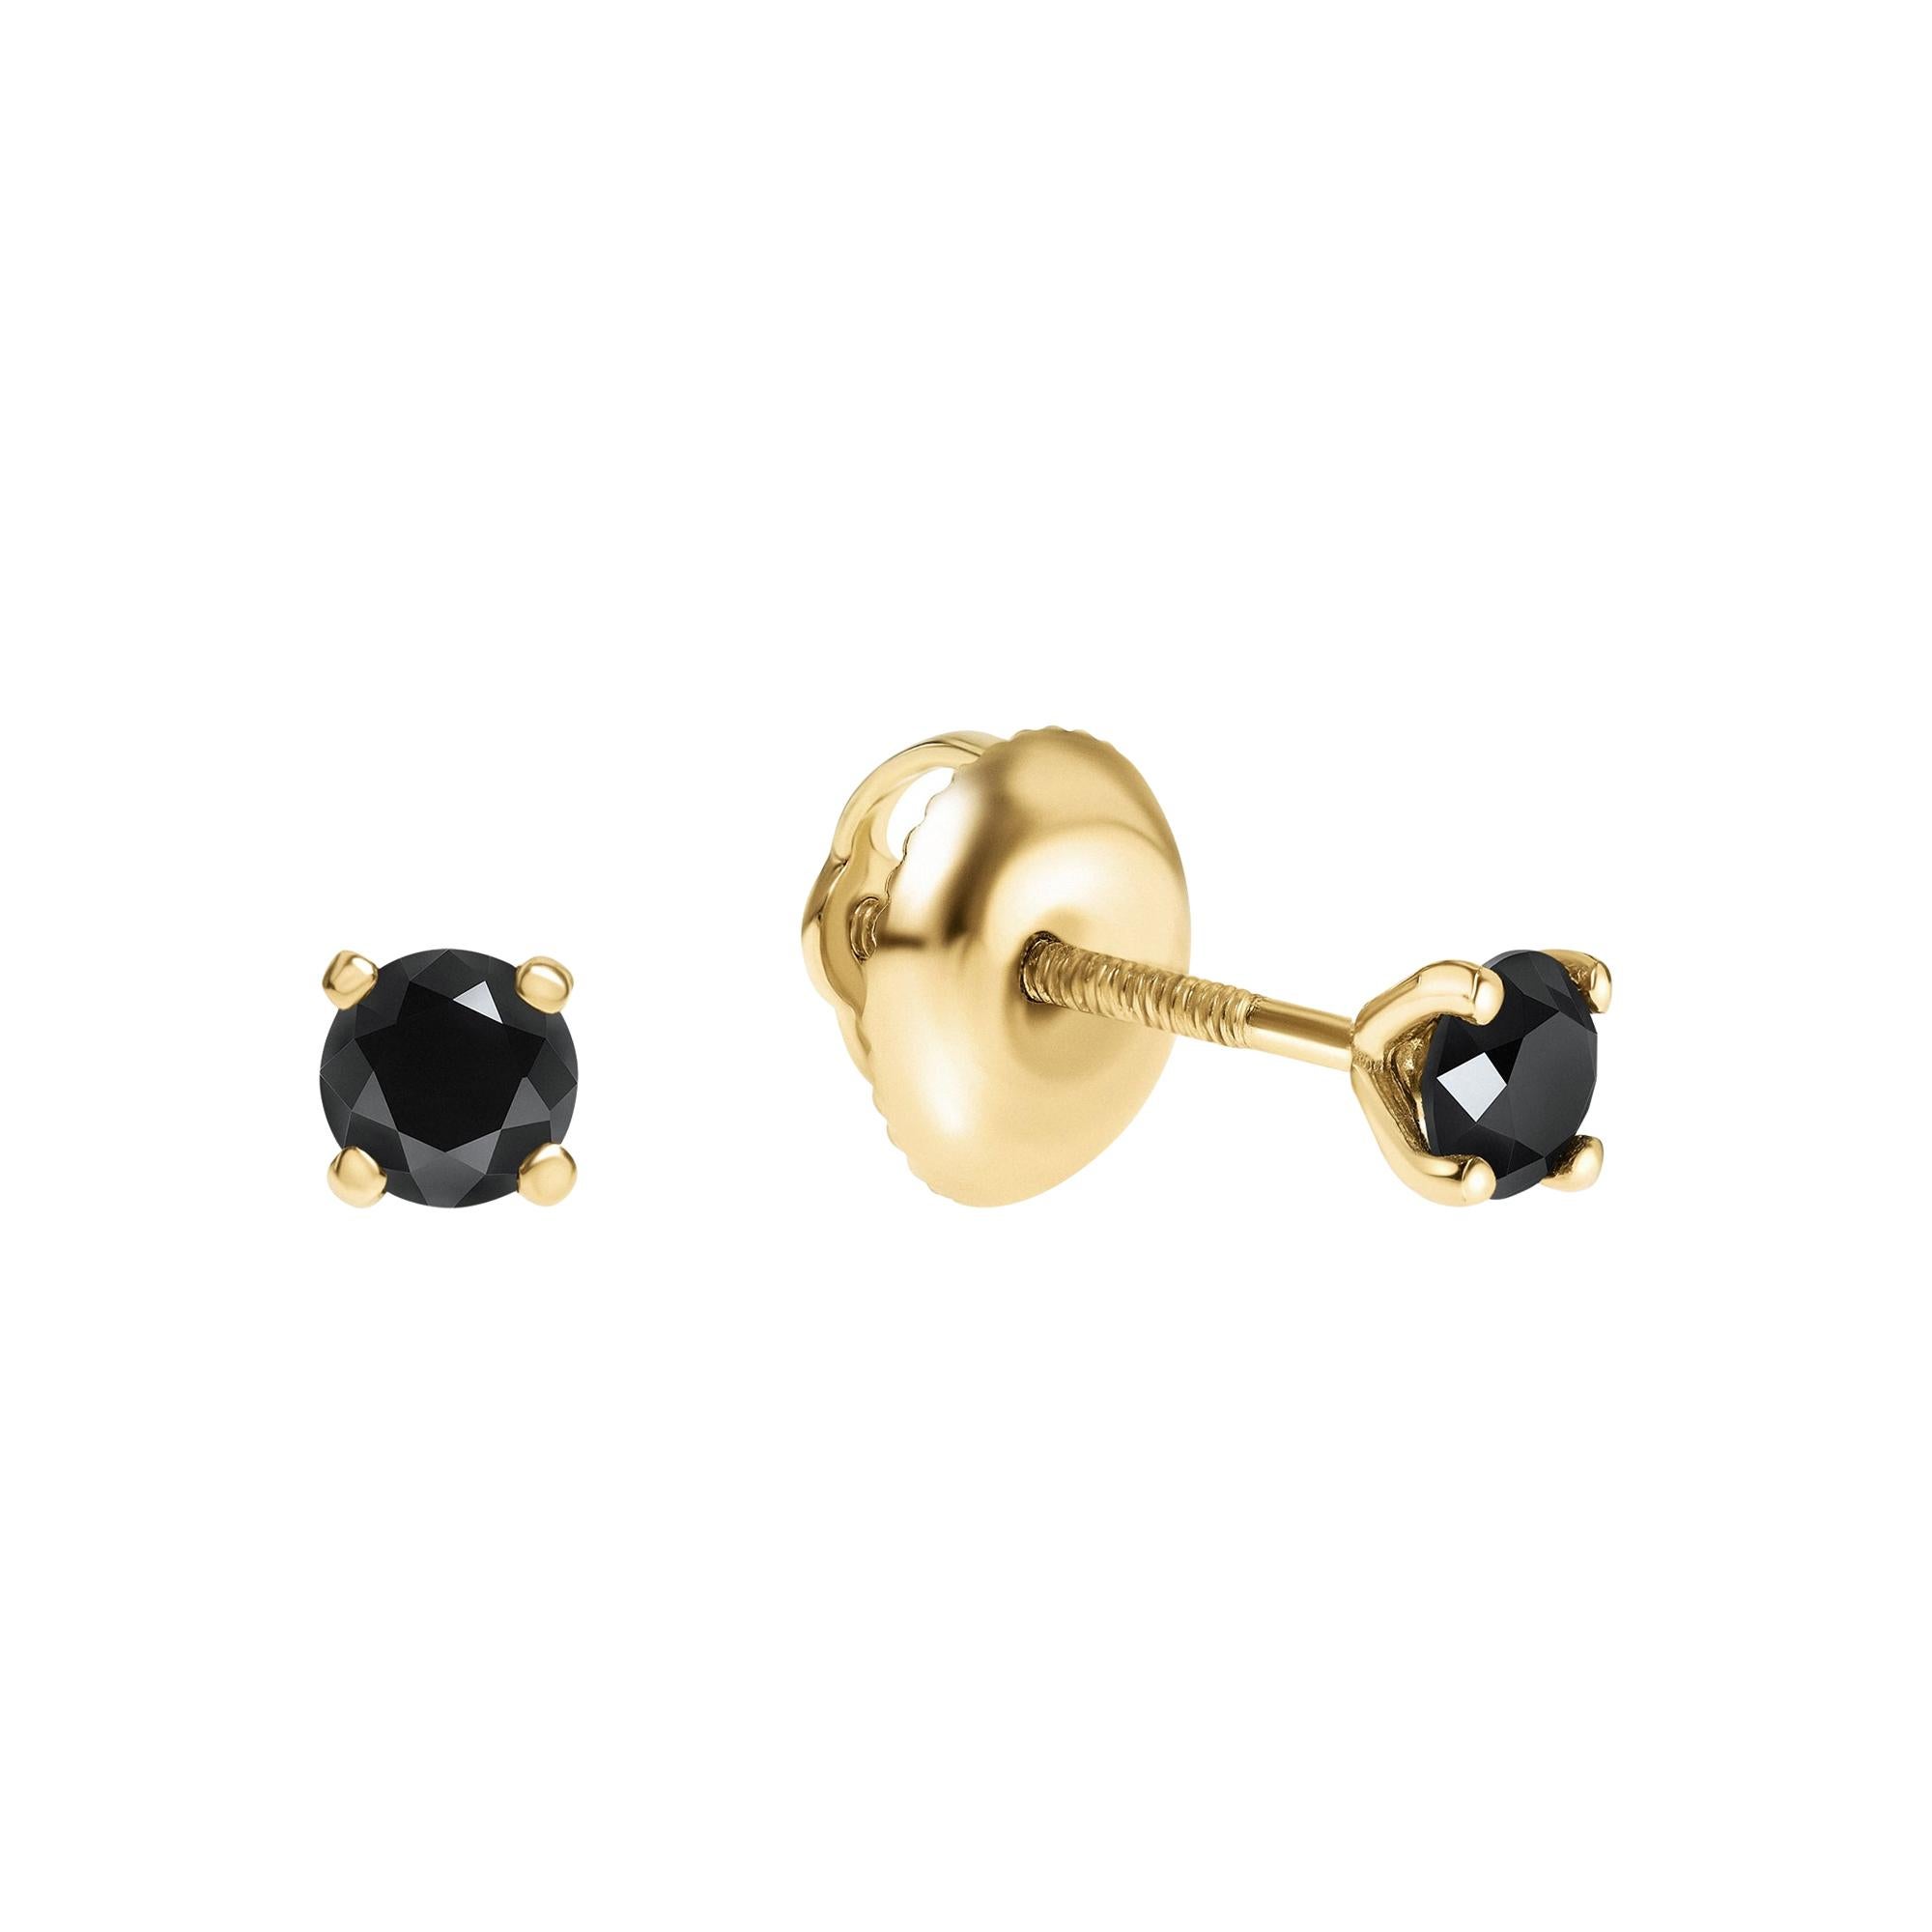 0.20 Carat Black Diamond Stud Earrings in 14 Karat Yellow Gold - Shlomit Rogel For Sale